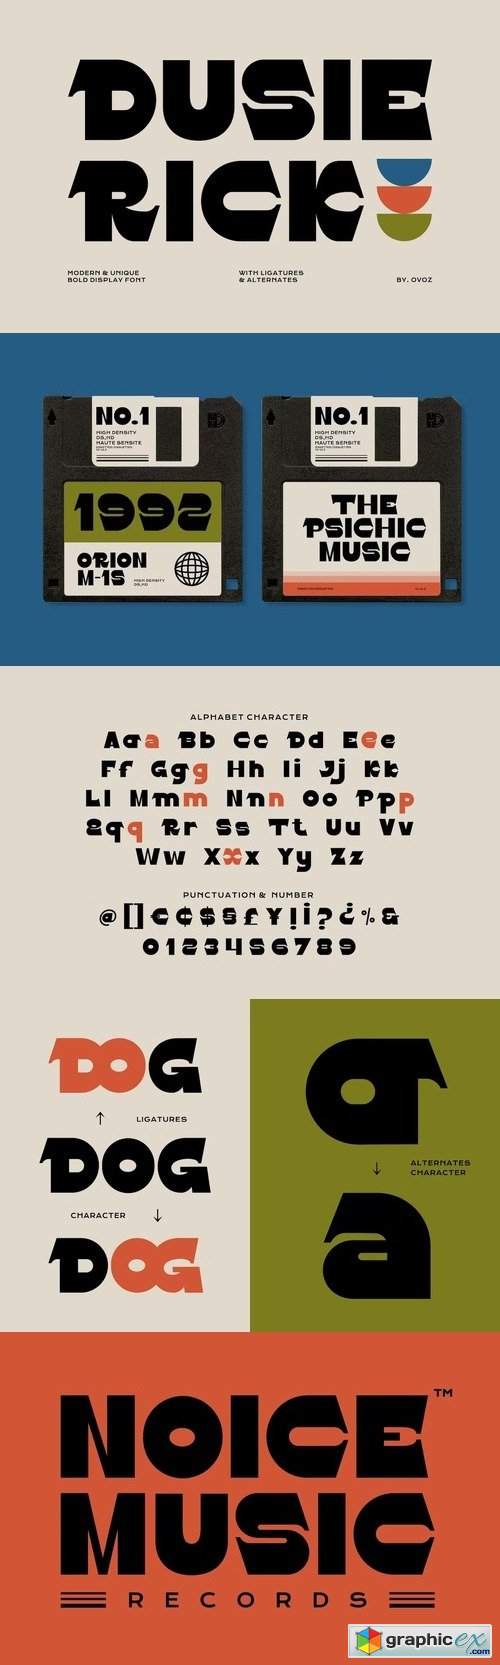 Dusie Rick - Display Typeface